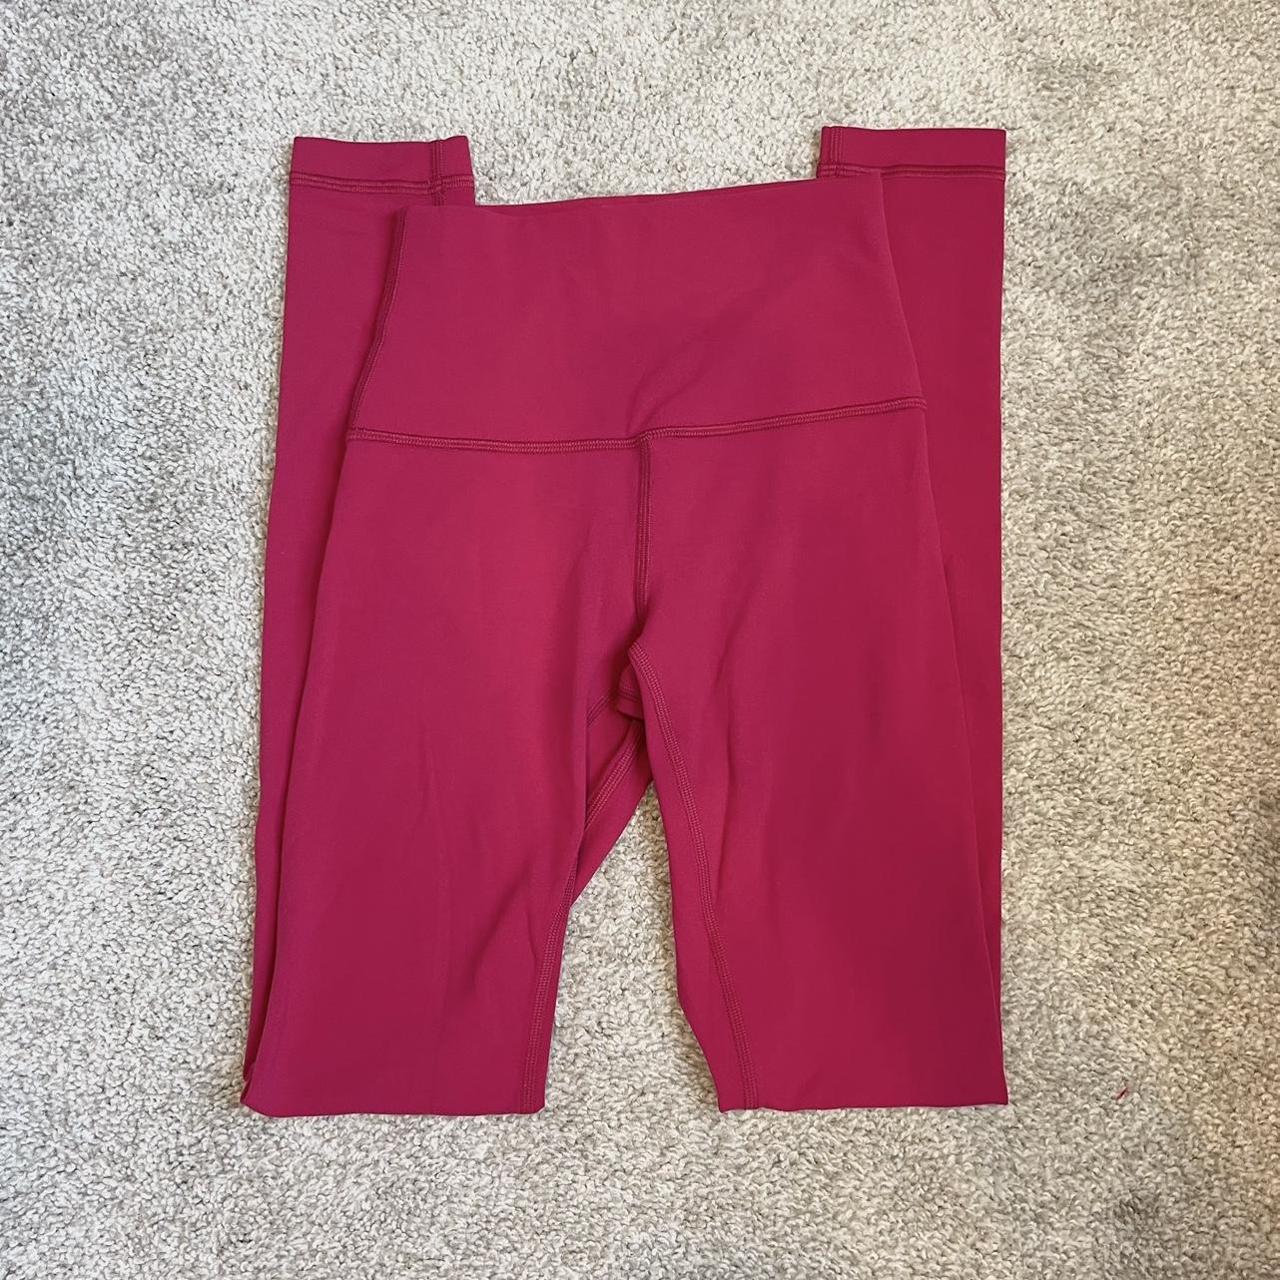 Lululemon Size 2 Ruby Red Align Pant Full Length 28” - Depop